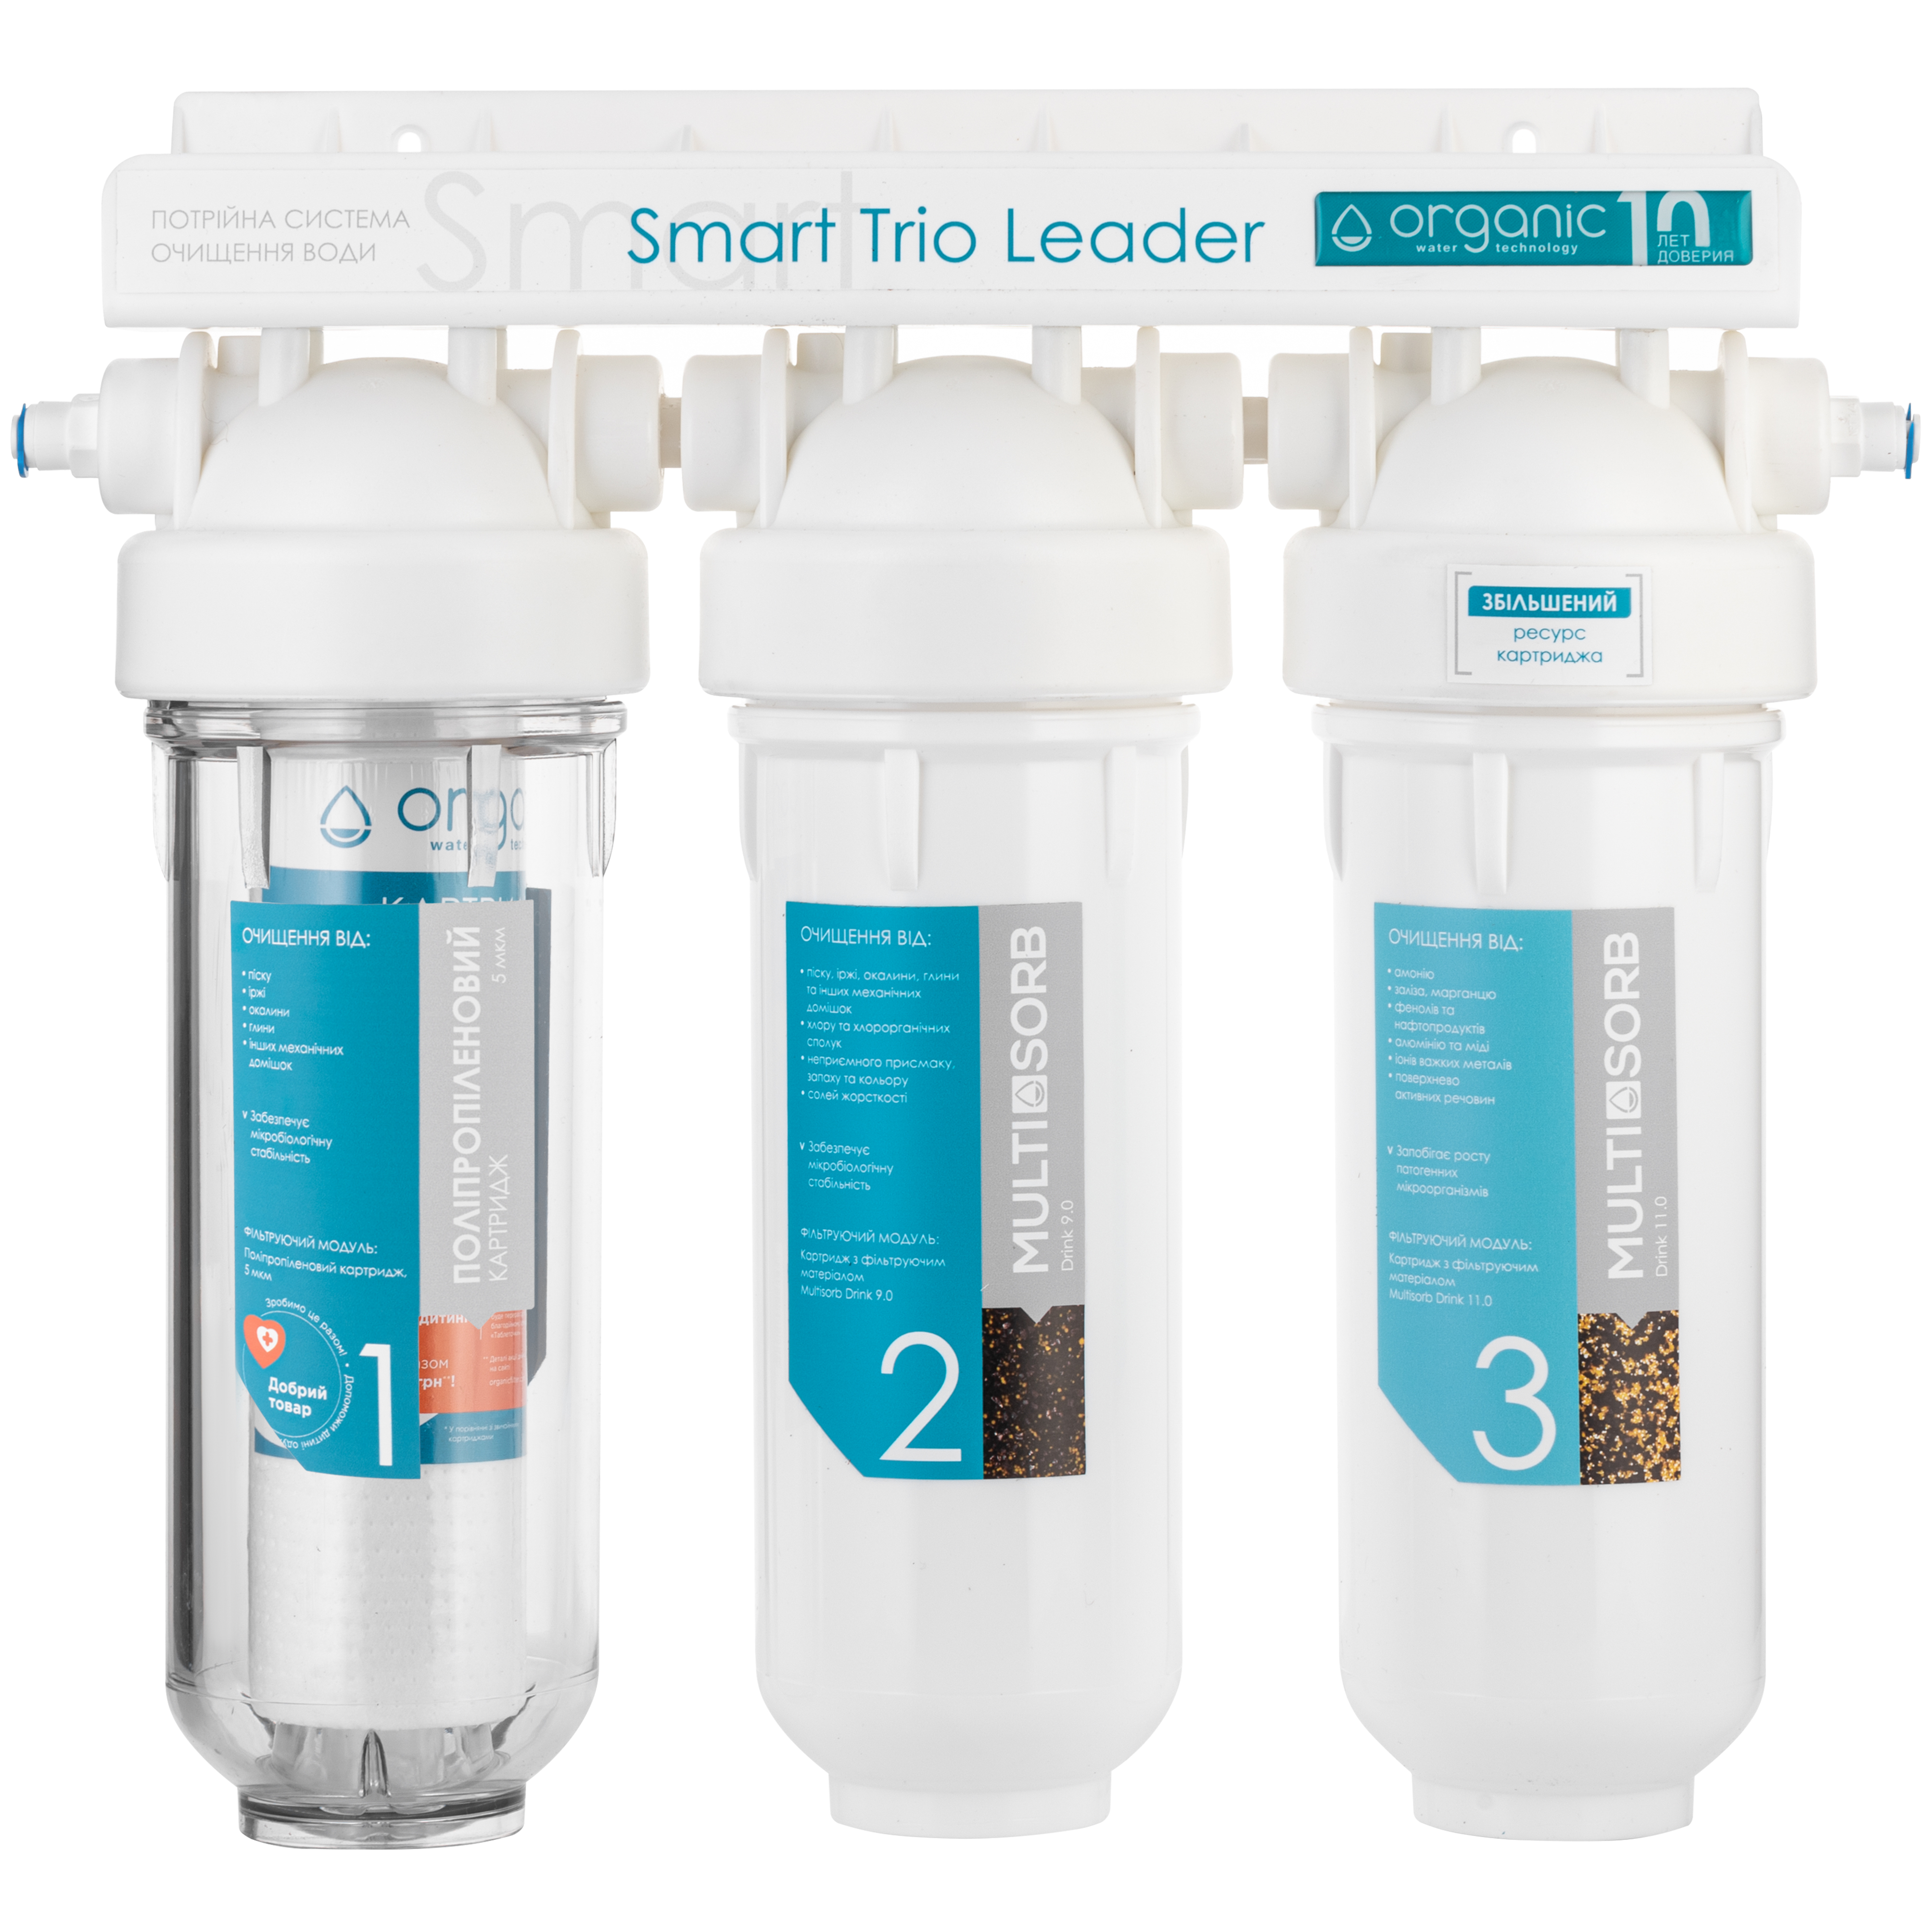 Відгуки триступінчатий фільтр для води Organic Smart TRIO LEADER в Україні